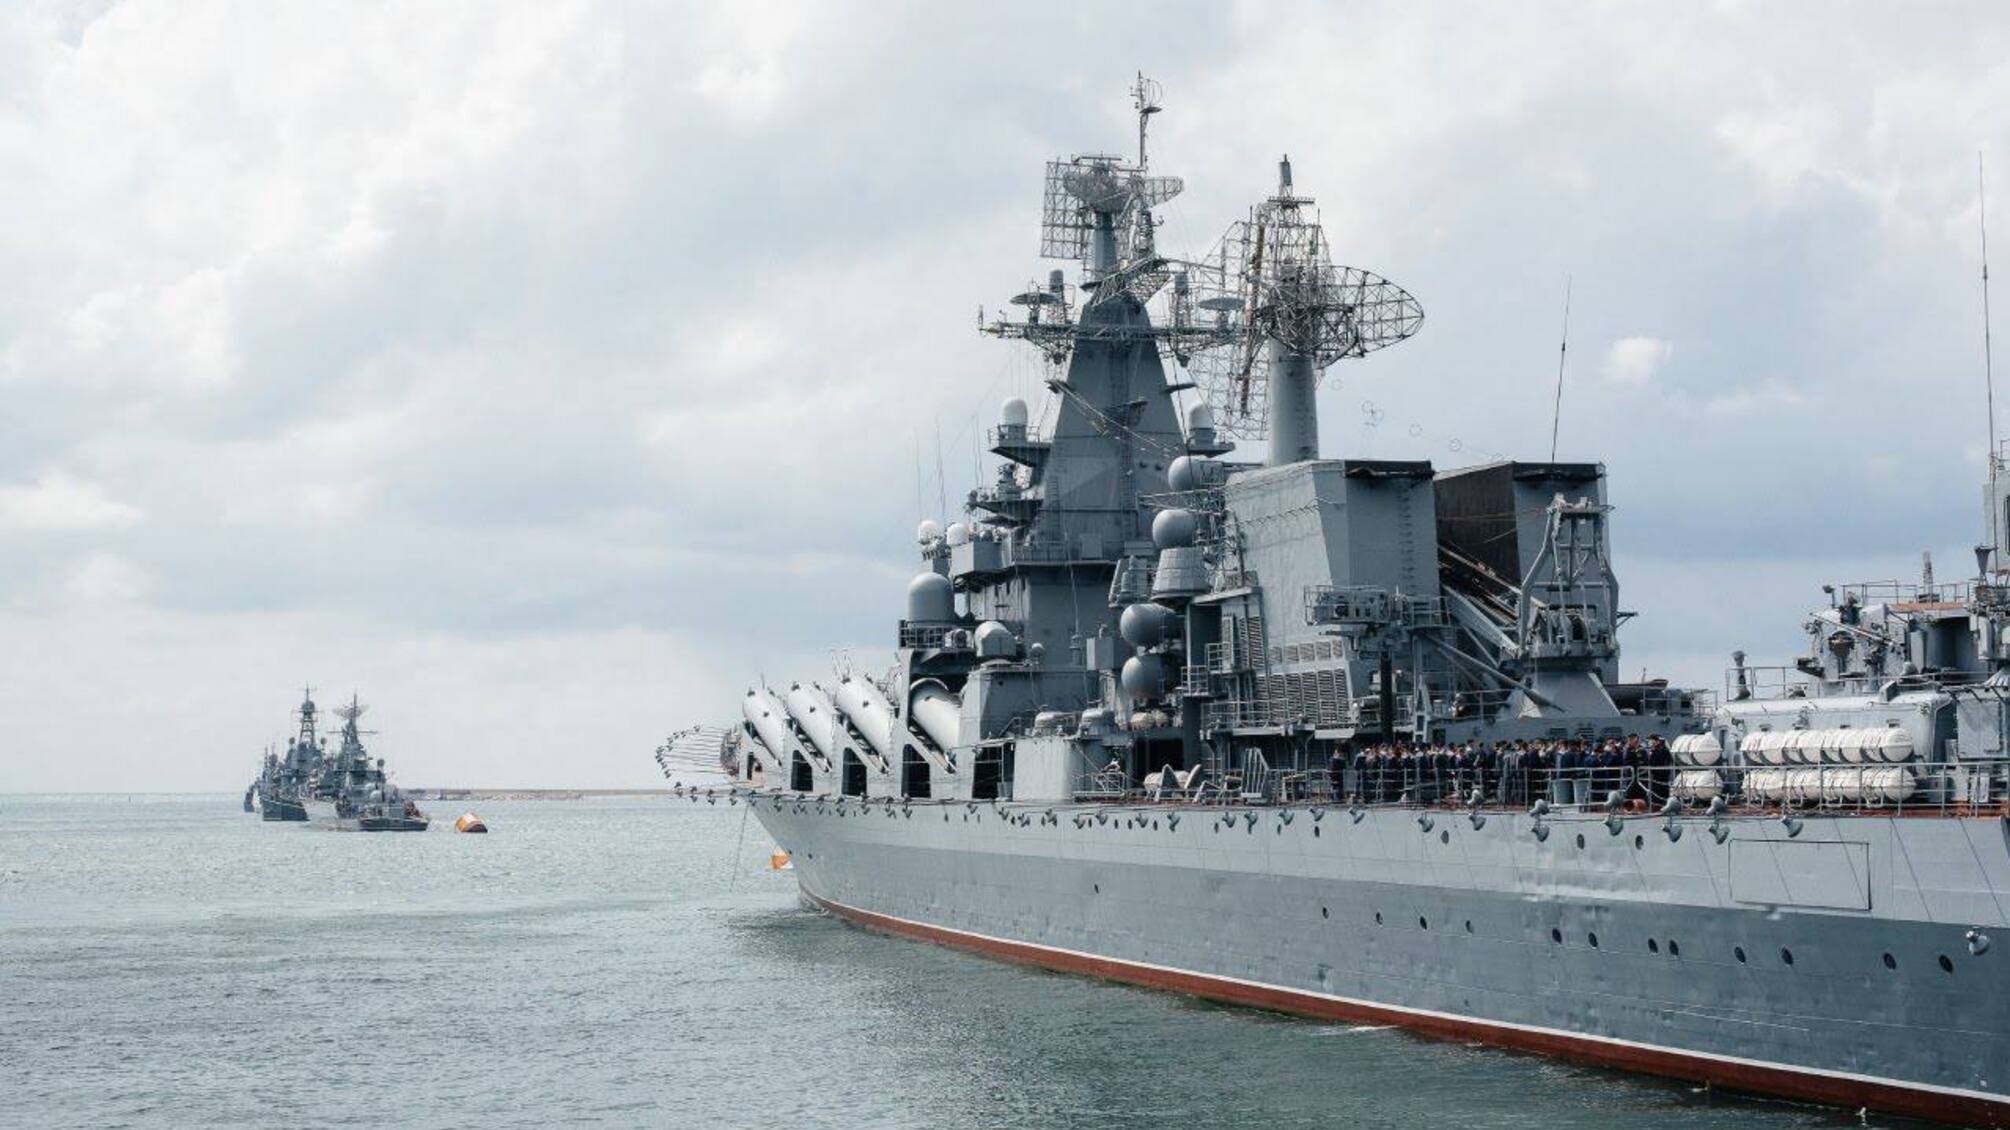 СМИ сообщают, что в Крыму, возможно, затонул еще один российский корабль